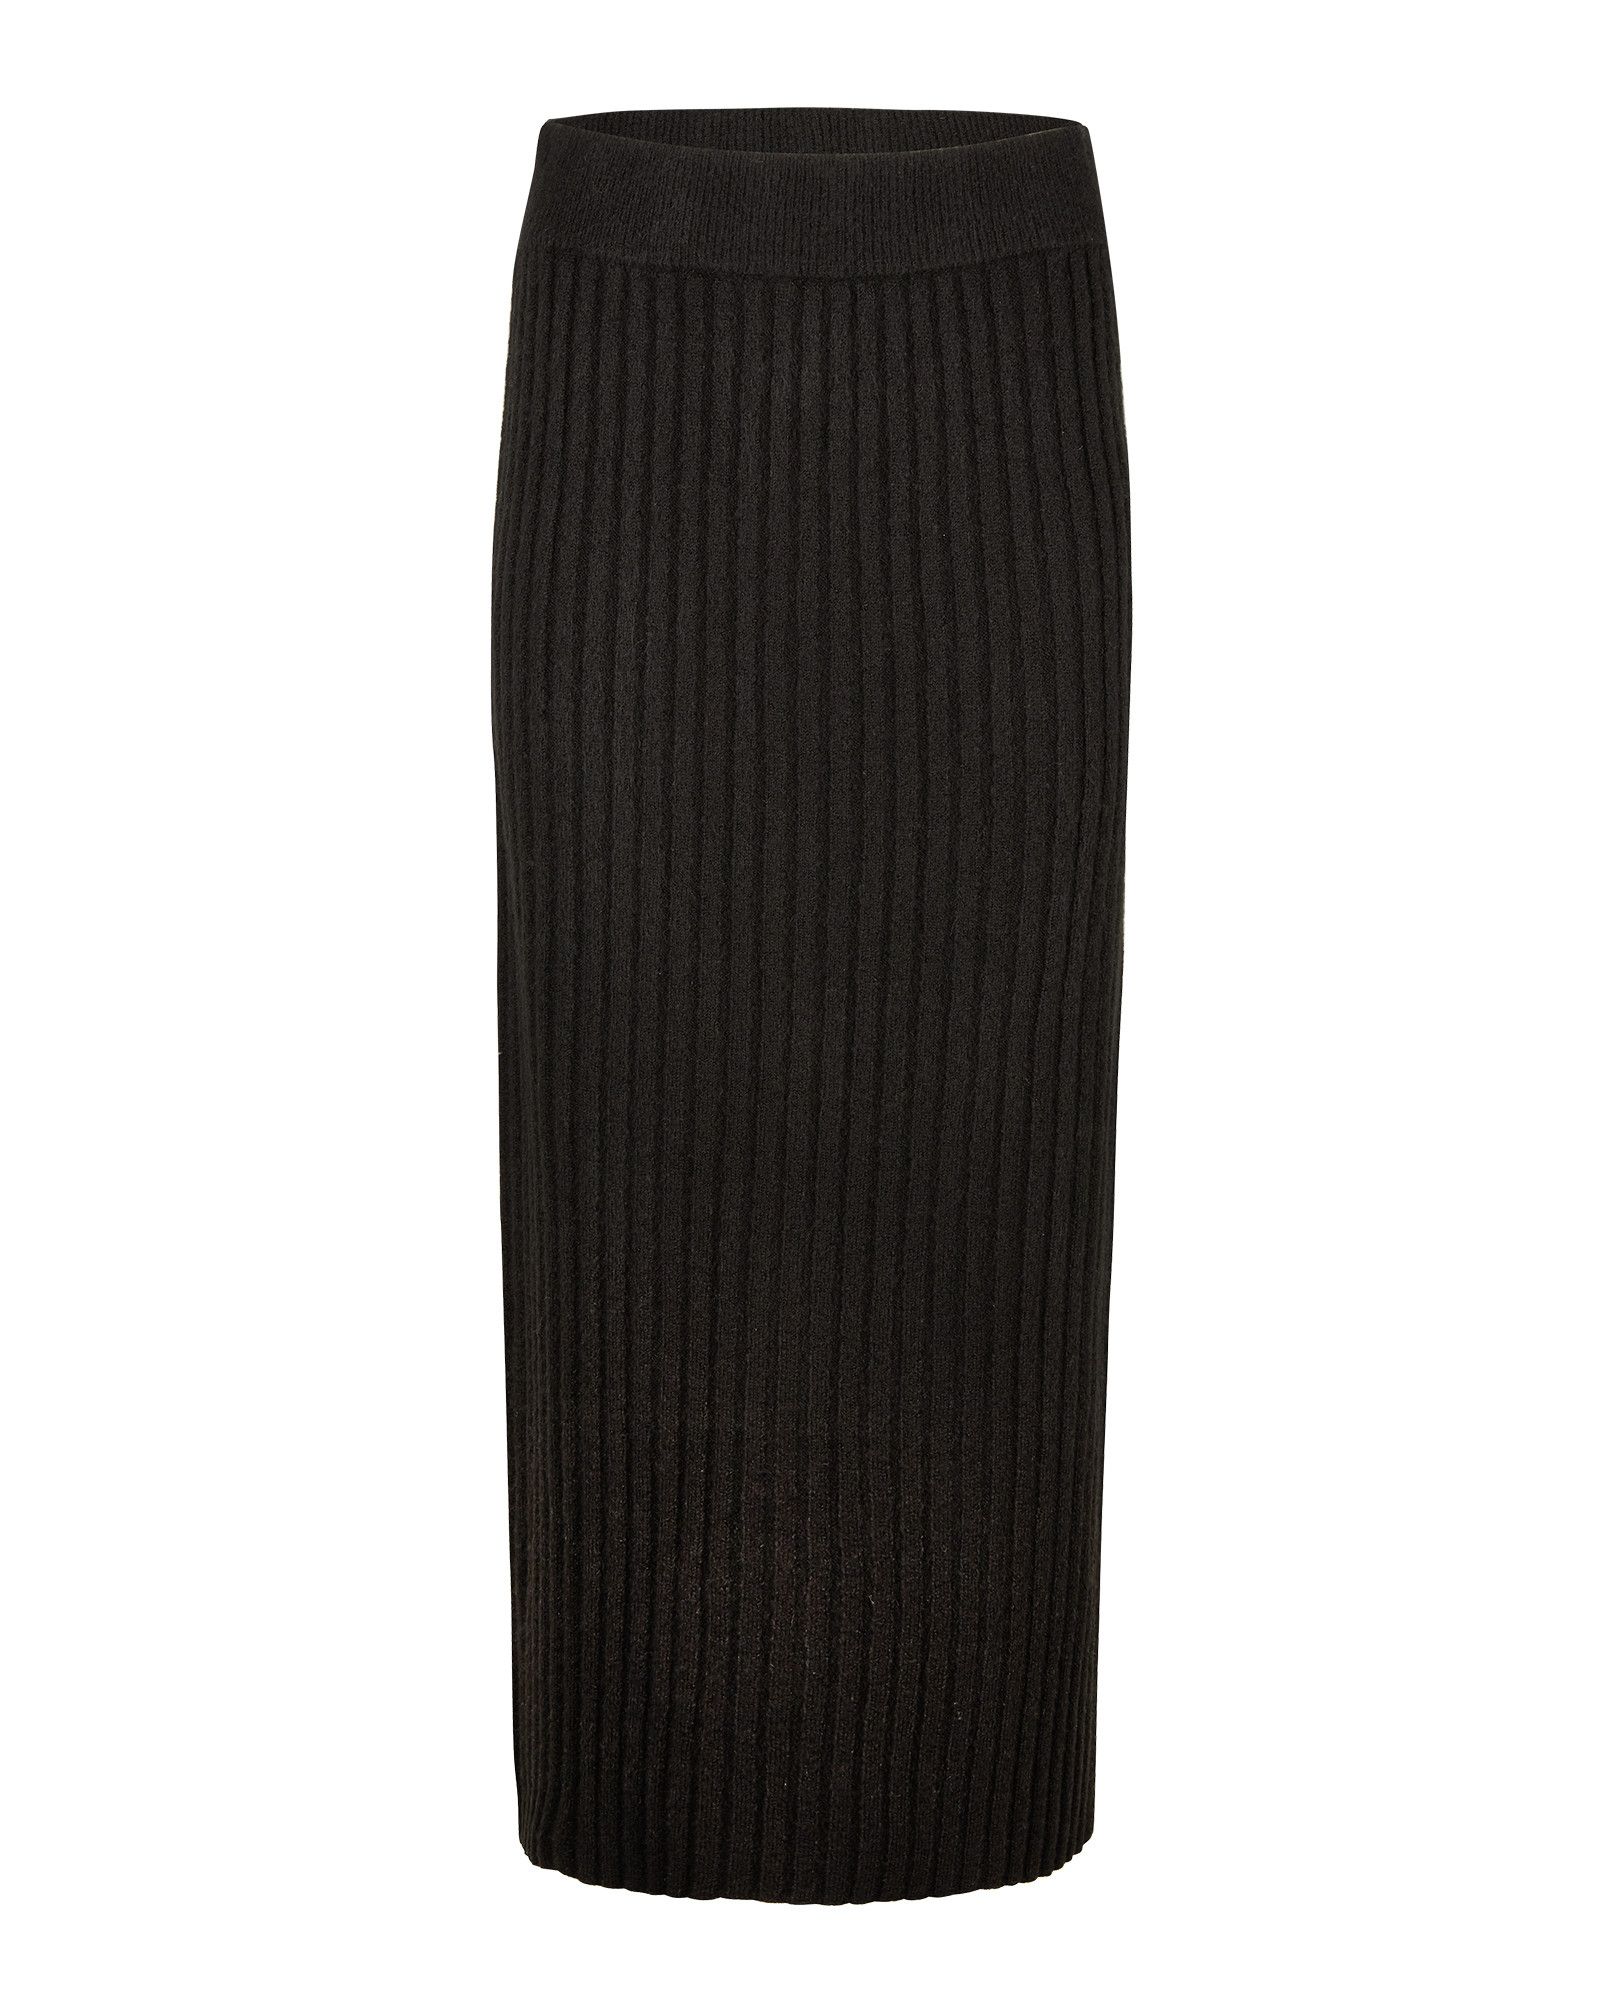 Ribbed Black Knitted Midi Skirt | Oliver Bonas